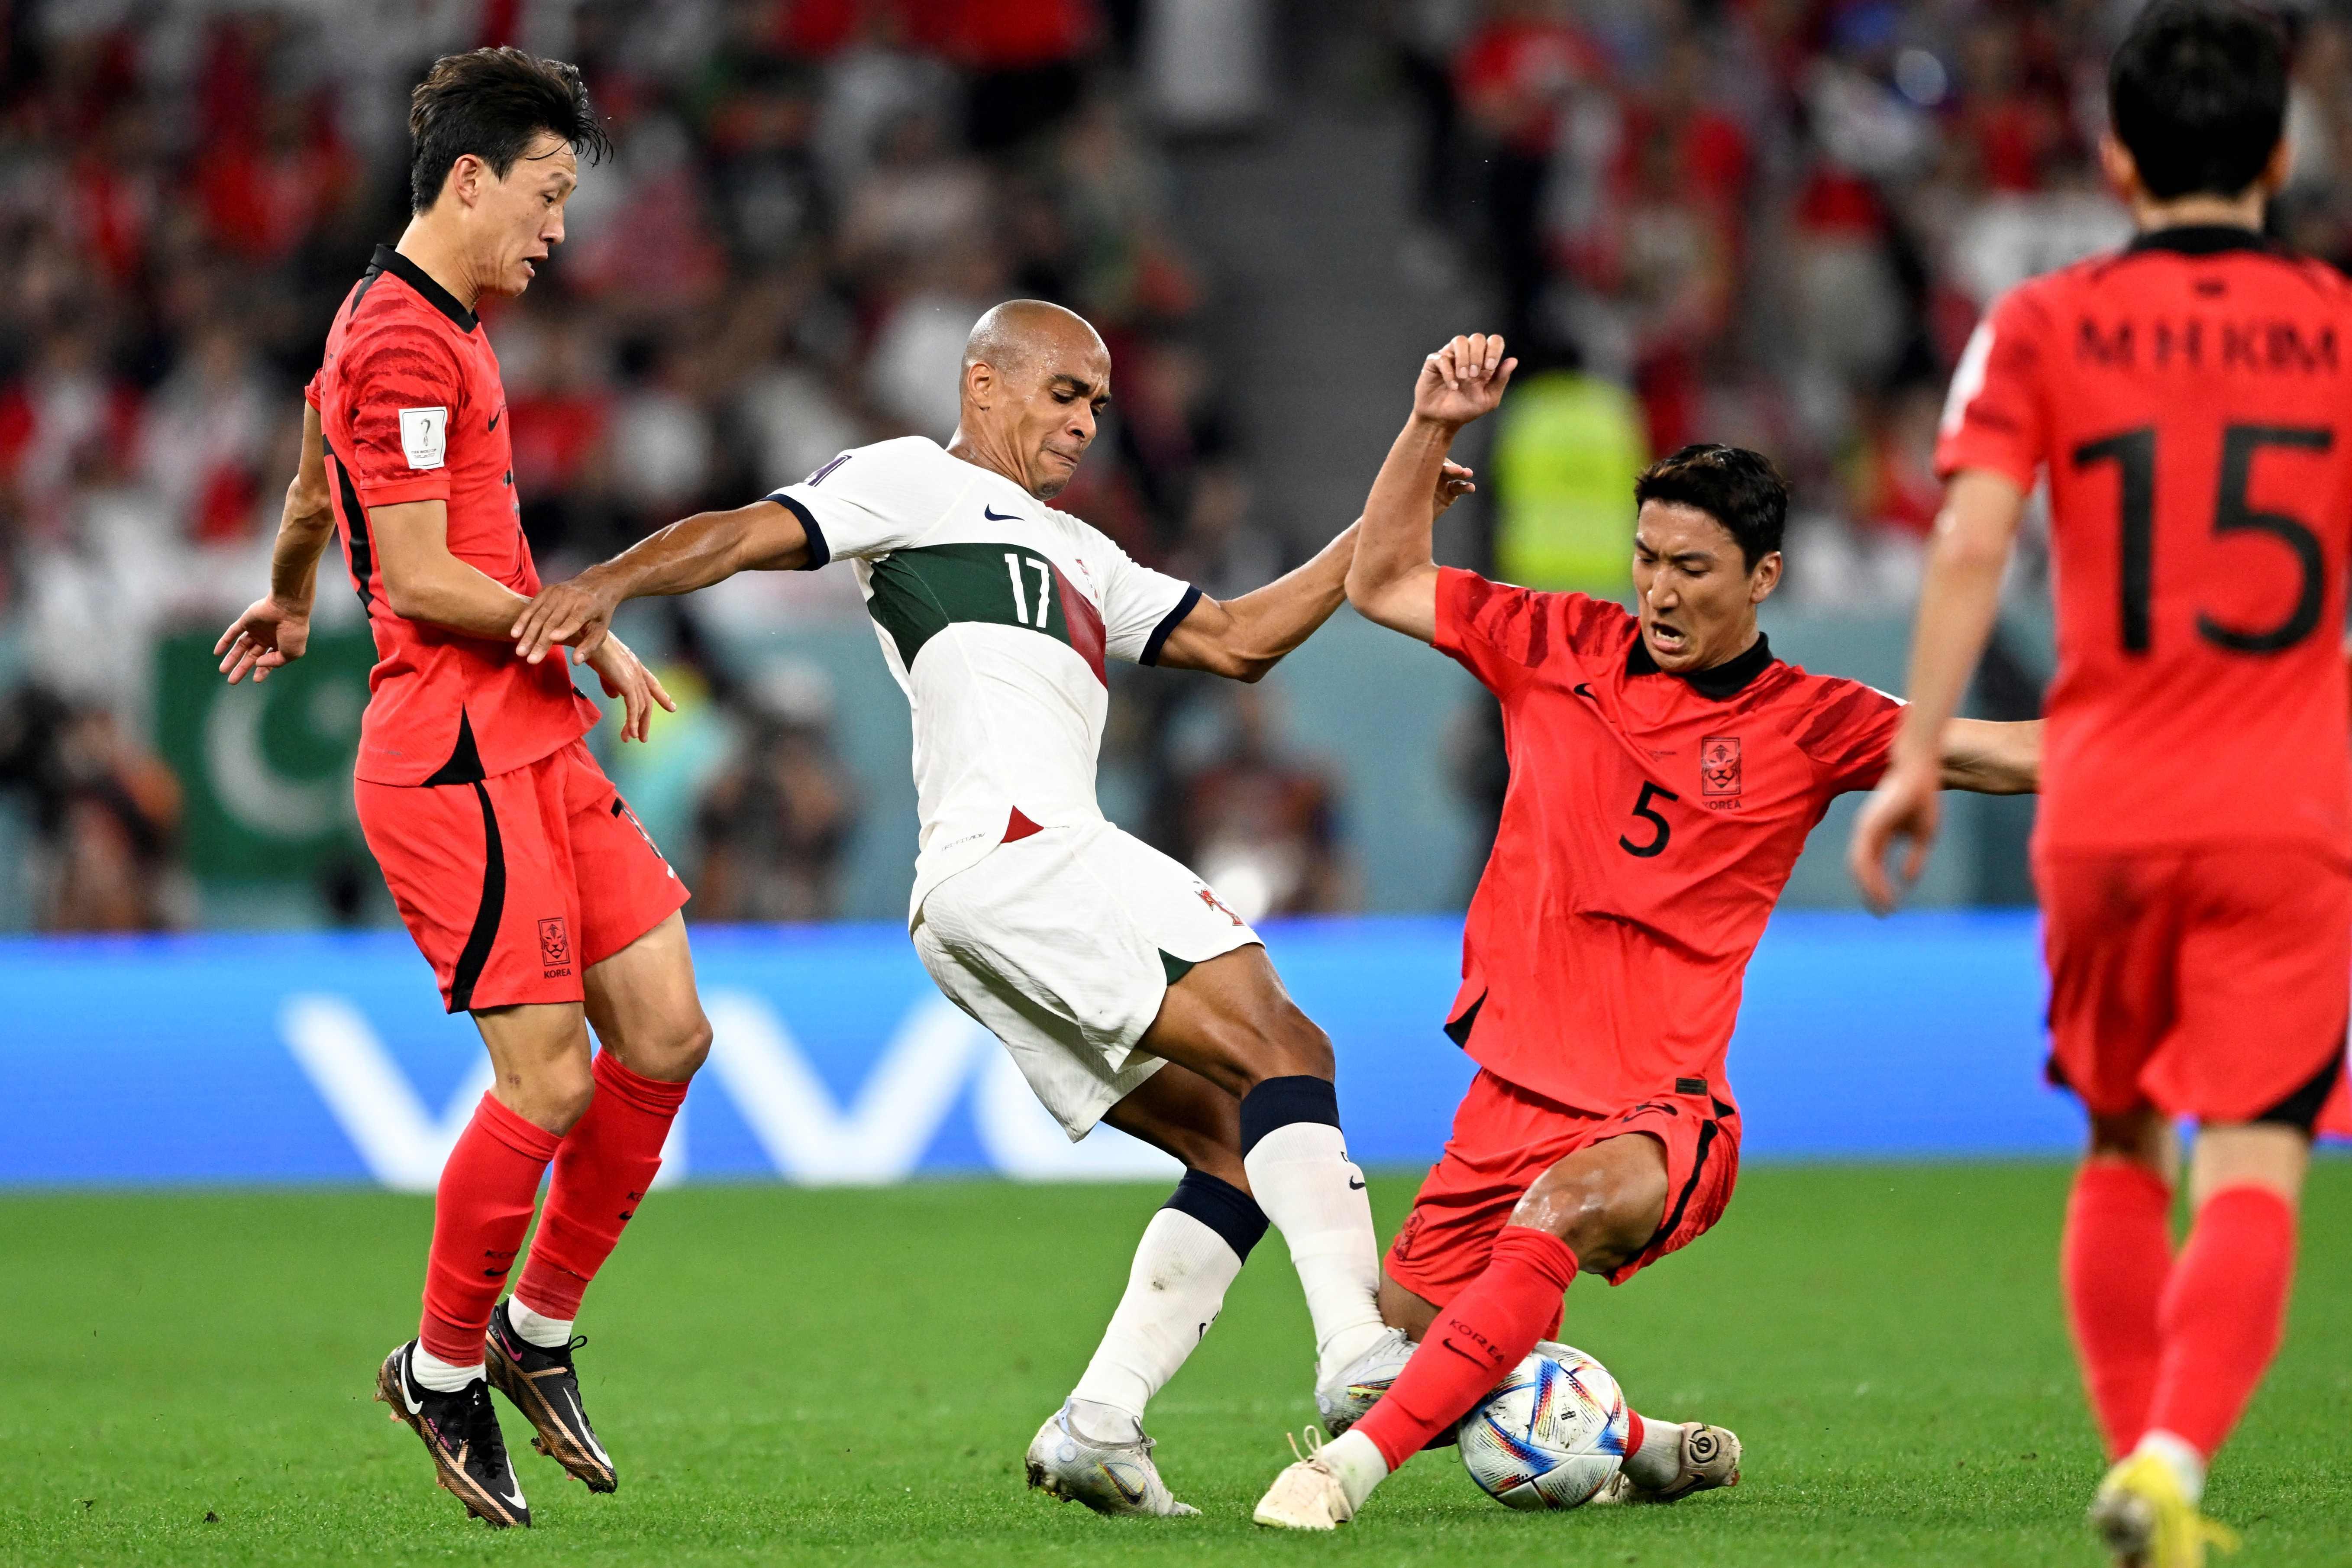 Güney Kore uzatmada attı, son 16 biletini kaptı Güney Kore - Portekiz maç sonucu: 2-1 (Dünya Kupası Maç Özeti)